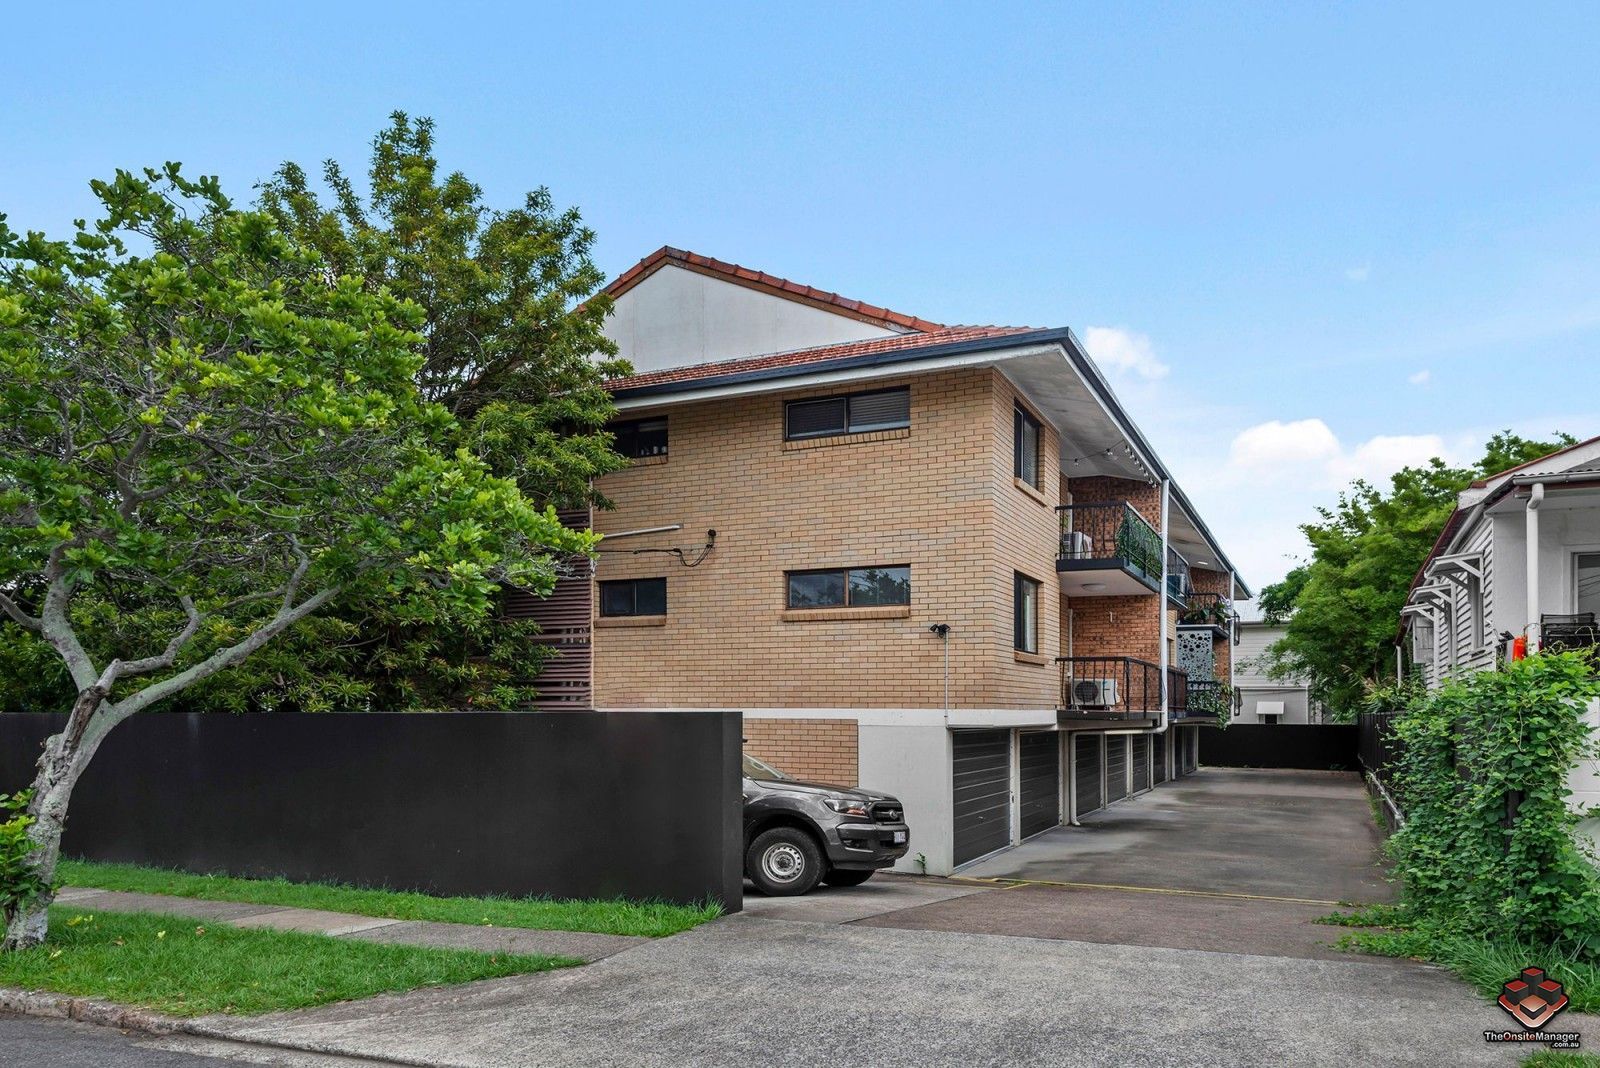 2 bedrooms Apartment / Unit / Flat in ID:21125744/530 Lower Bowen Terrace NEW FARM QLD, 4005